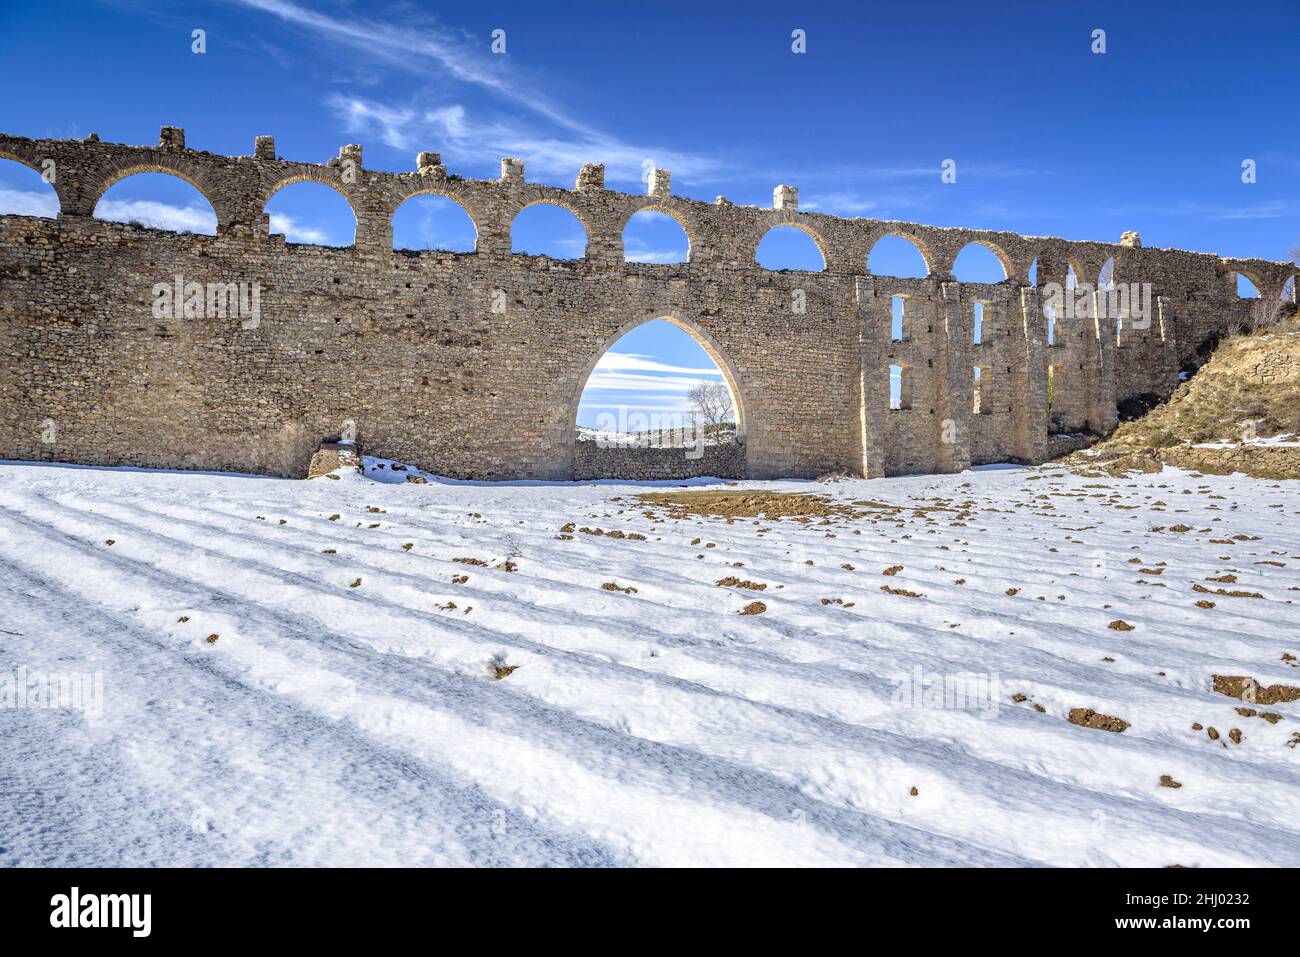 Morella aqueduct after a snowfall in winter (Castellón province, Valencian Community, Spain) ESP: Acueducto de Morella tras una nevada, Com Valenciana Stock Photo